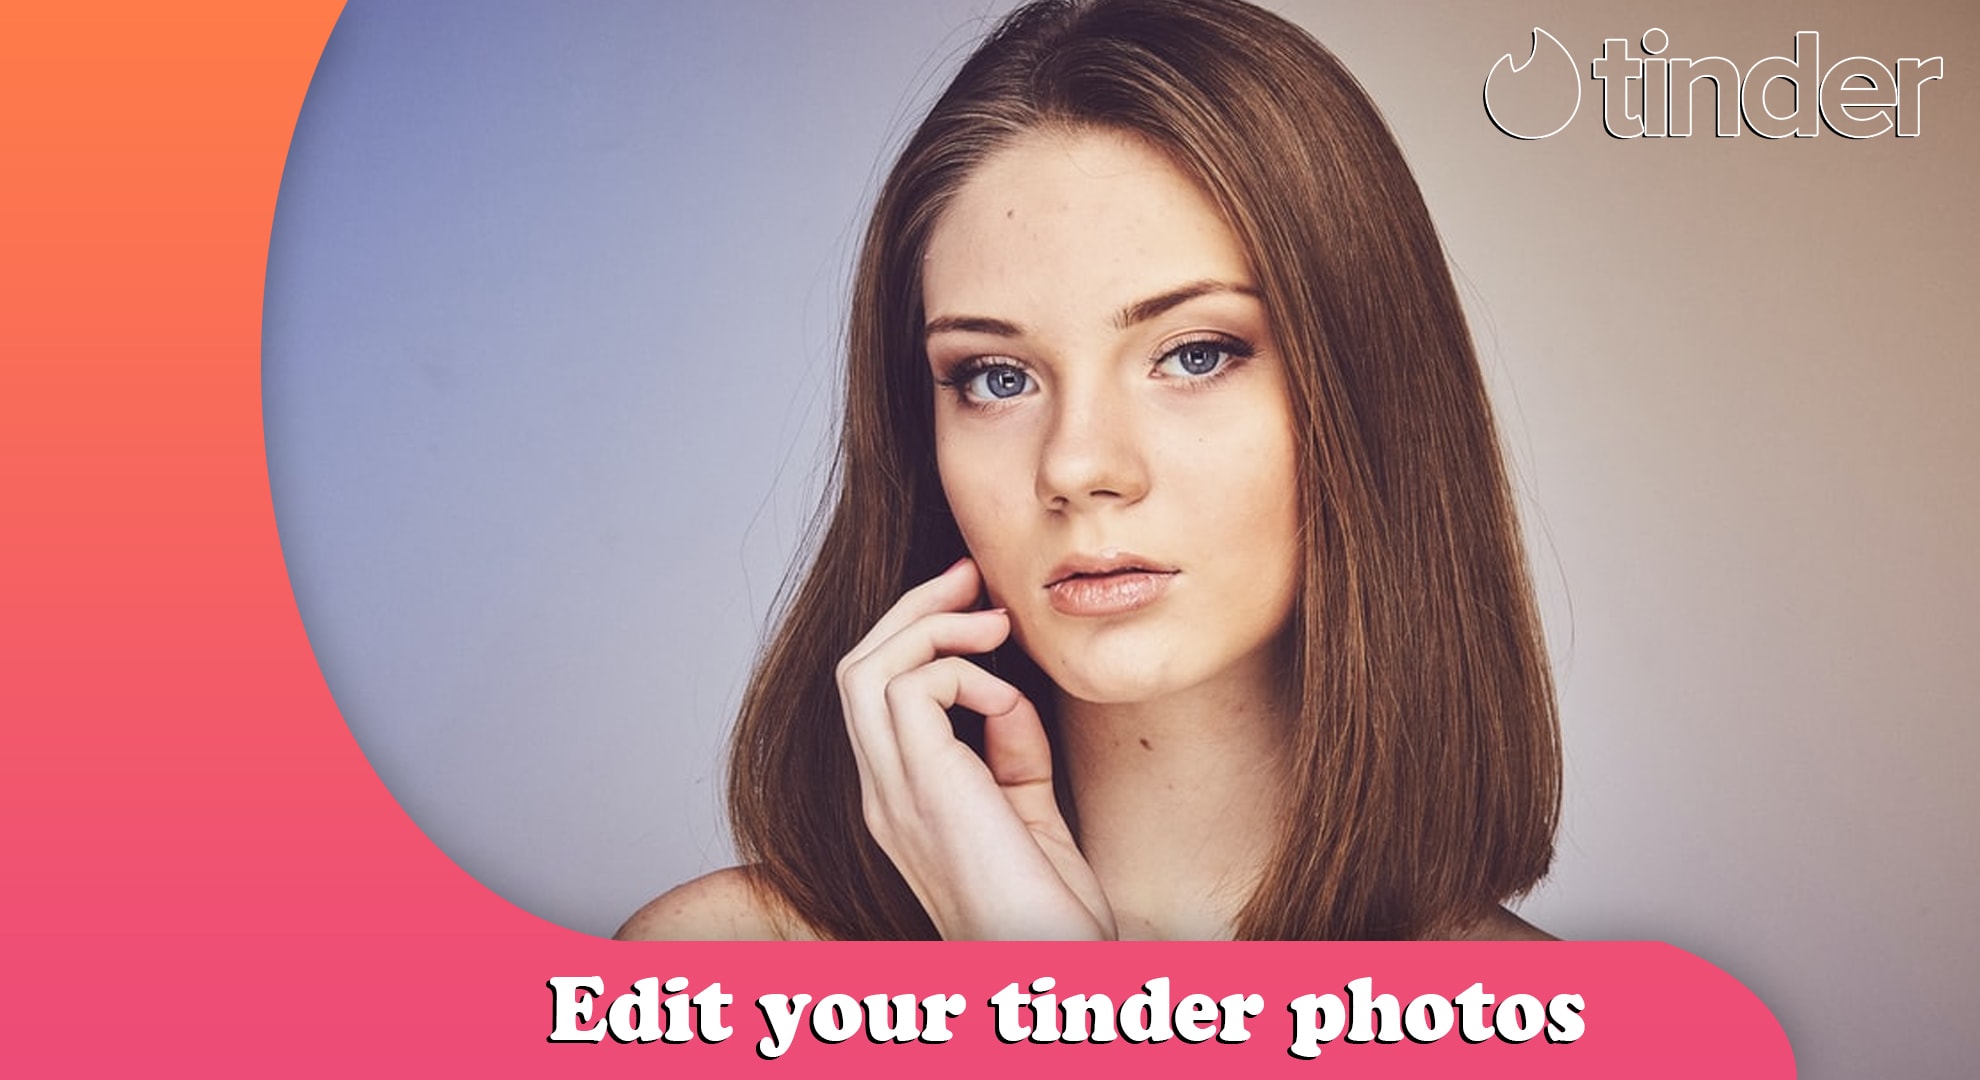 Edit your tinder, dating app photos by Wilderweinnn | Fiverr